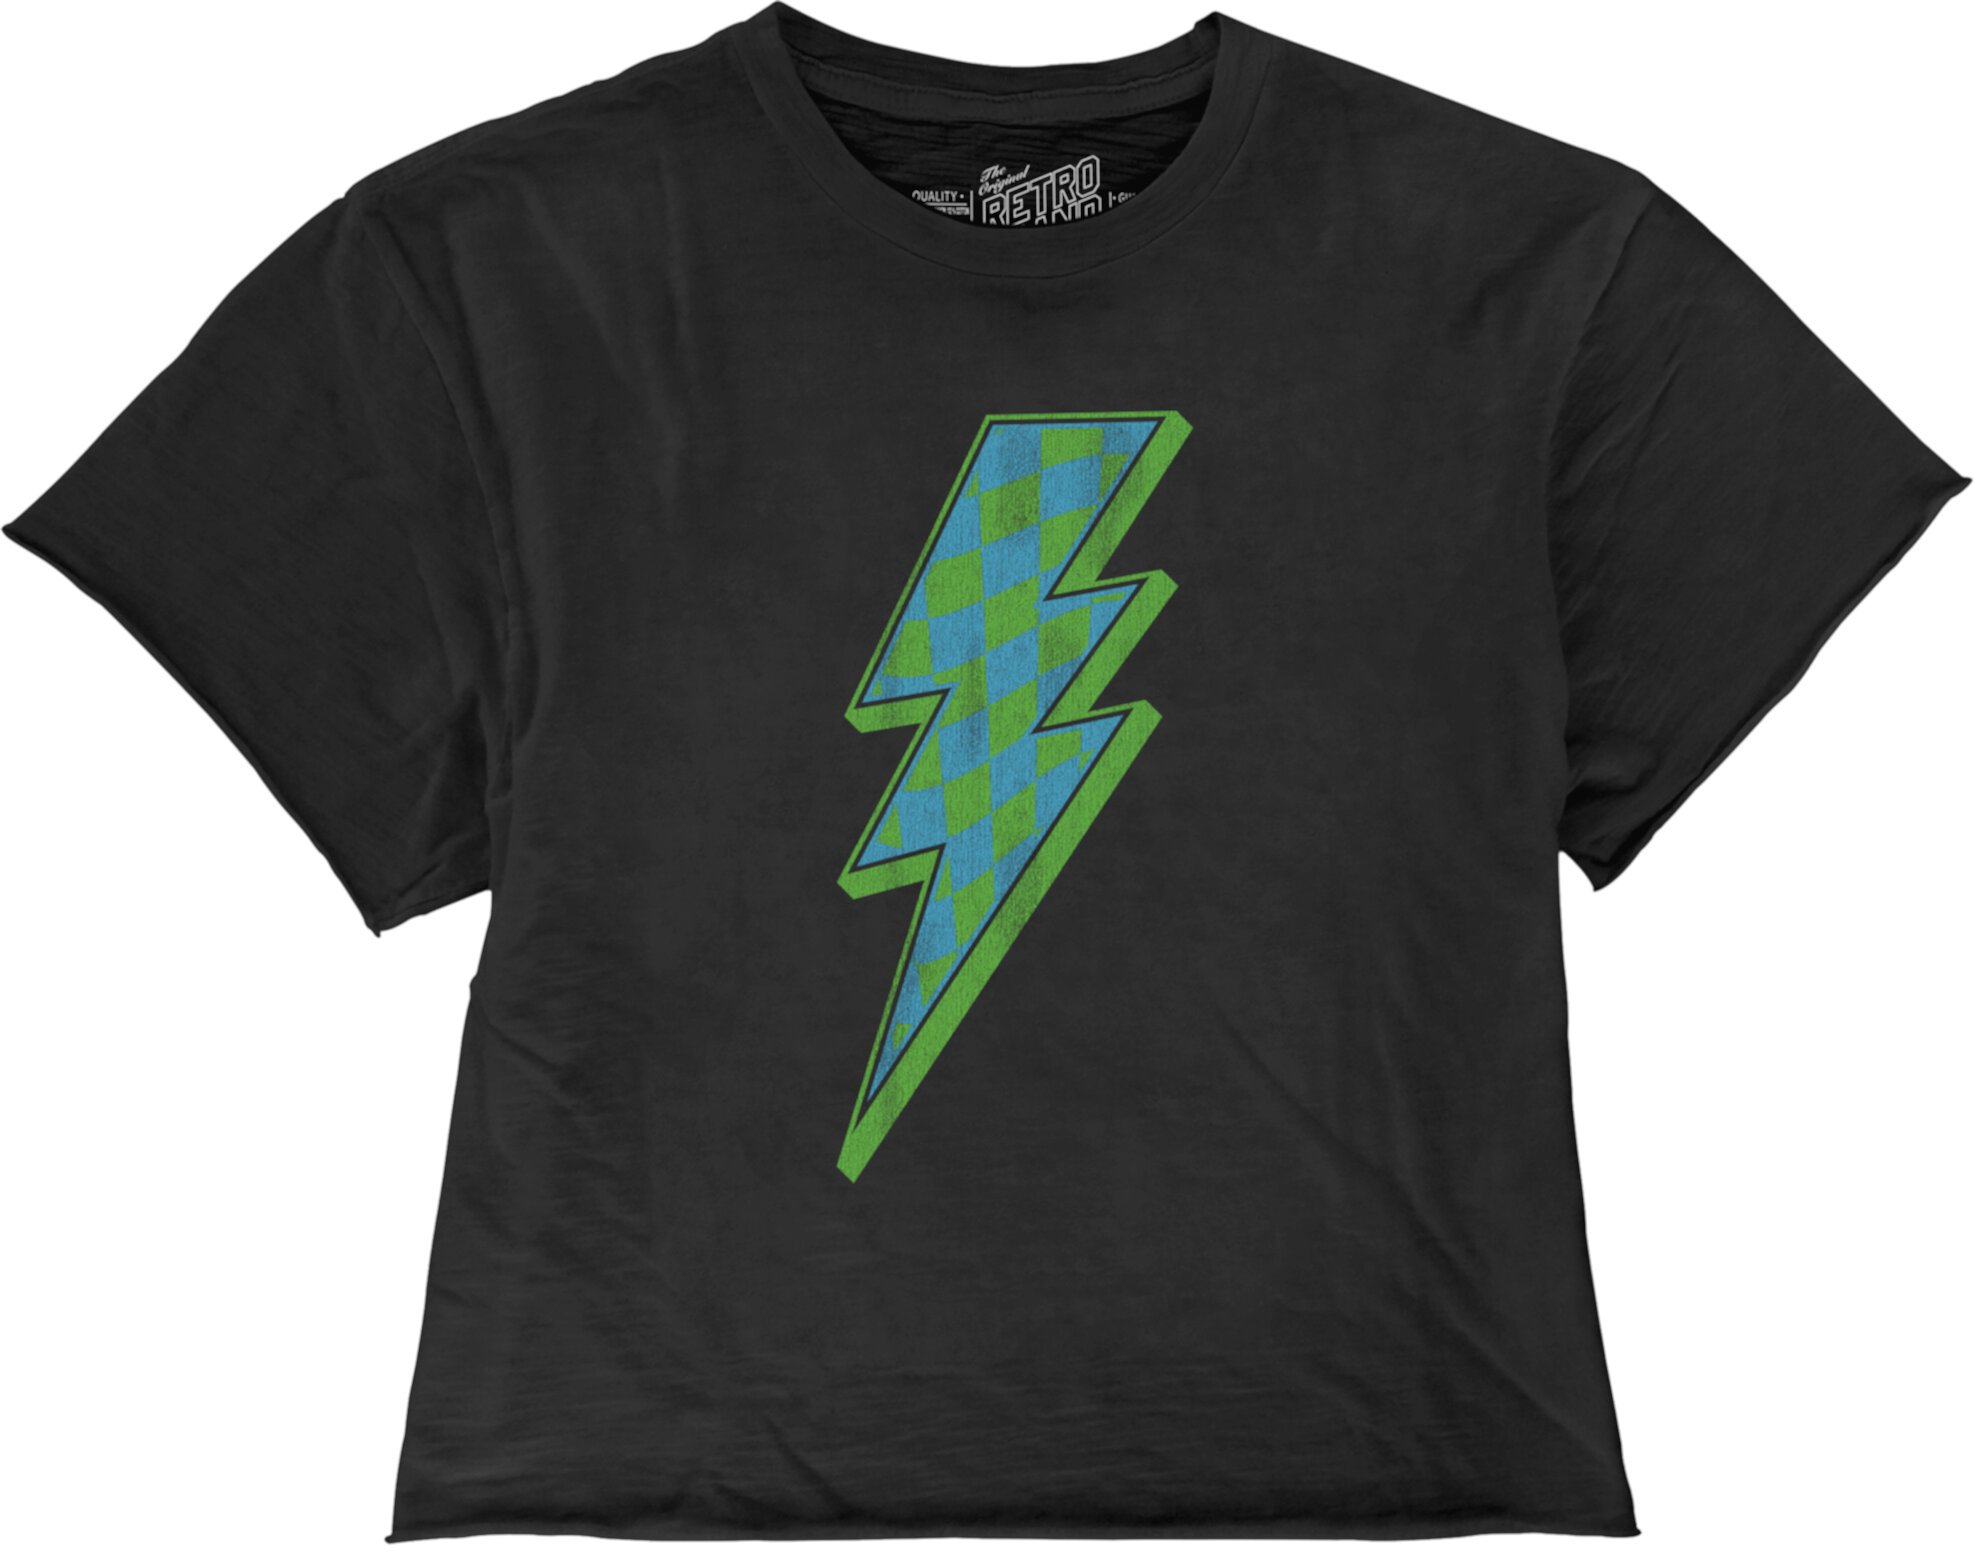 Слегка укороченная футболка в клетку Cotton Slub Lightning (для больших детей) The Original Retro Brand Kids